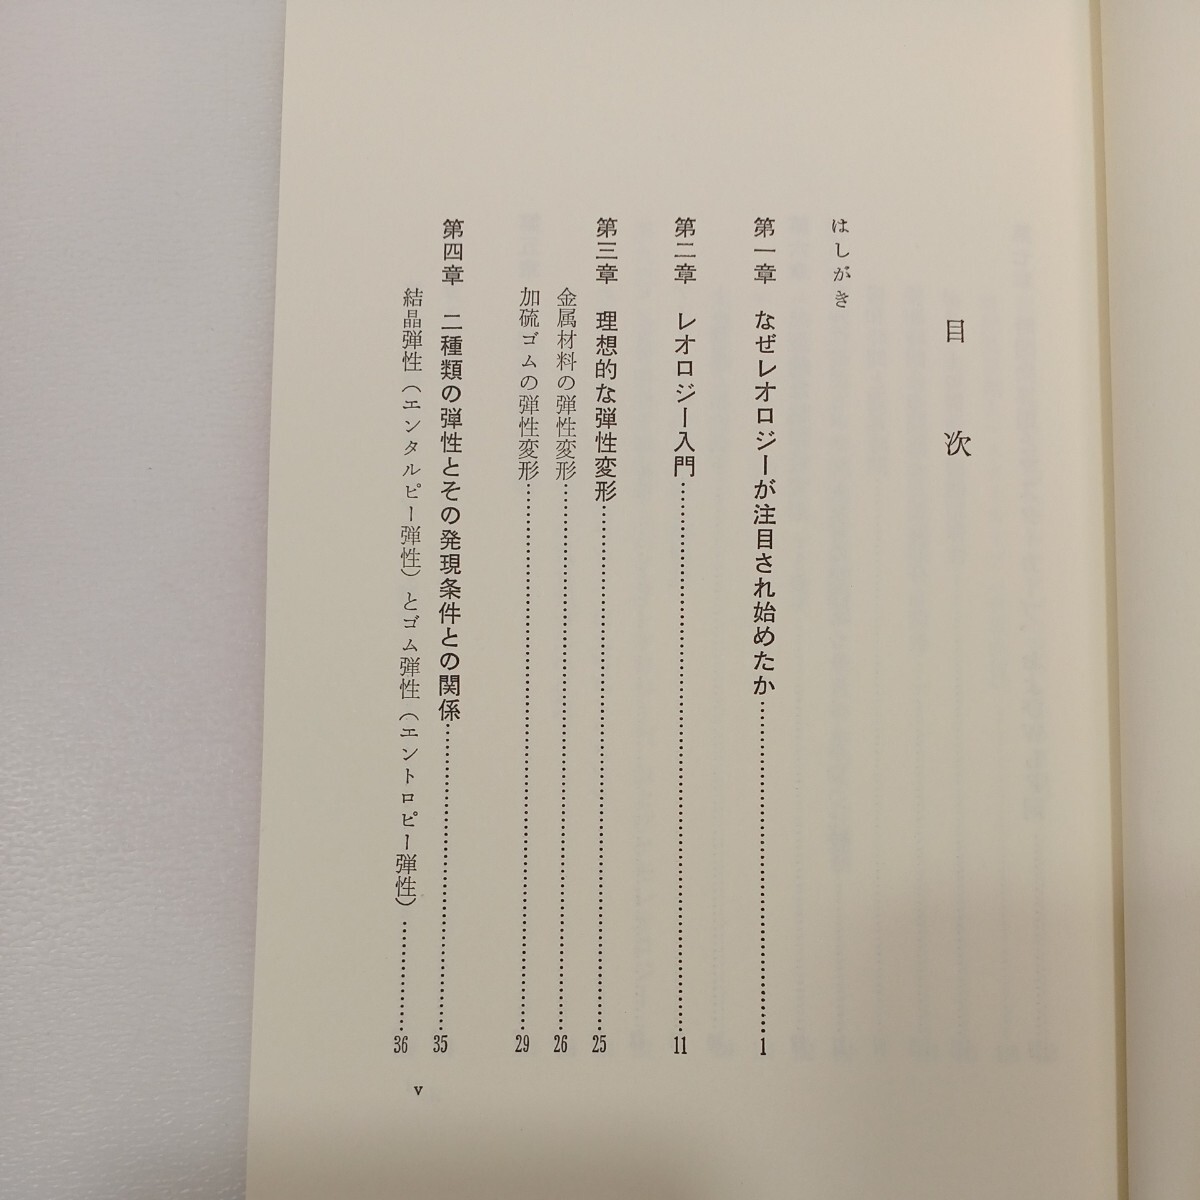 zaa561♪やさしいレオロジ-: 基礎から最先端まで 単行本 1986/7/1 村上 謙吉 (著) 産業図書 (1986/7/1)